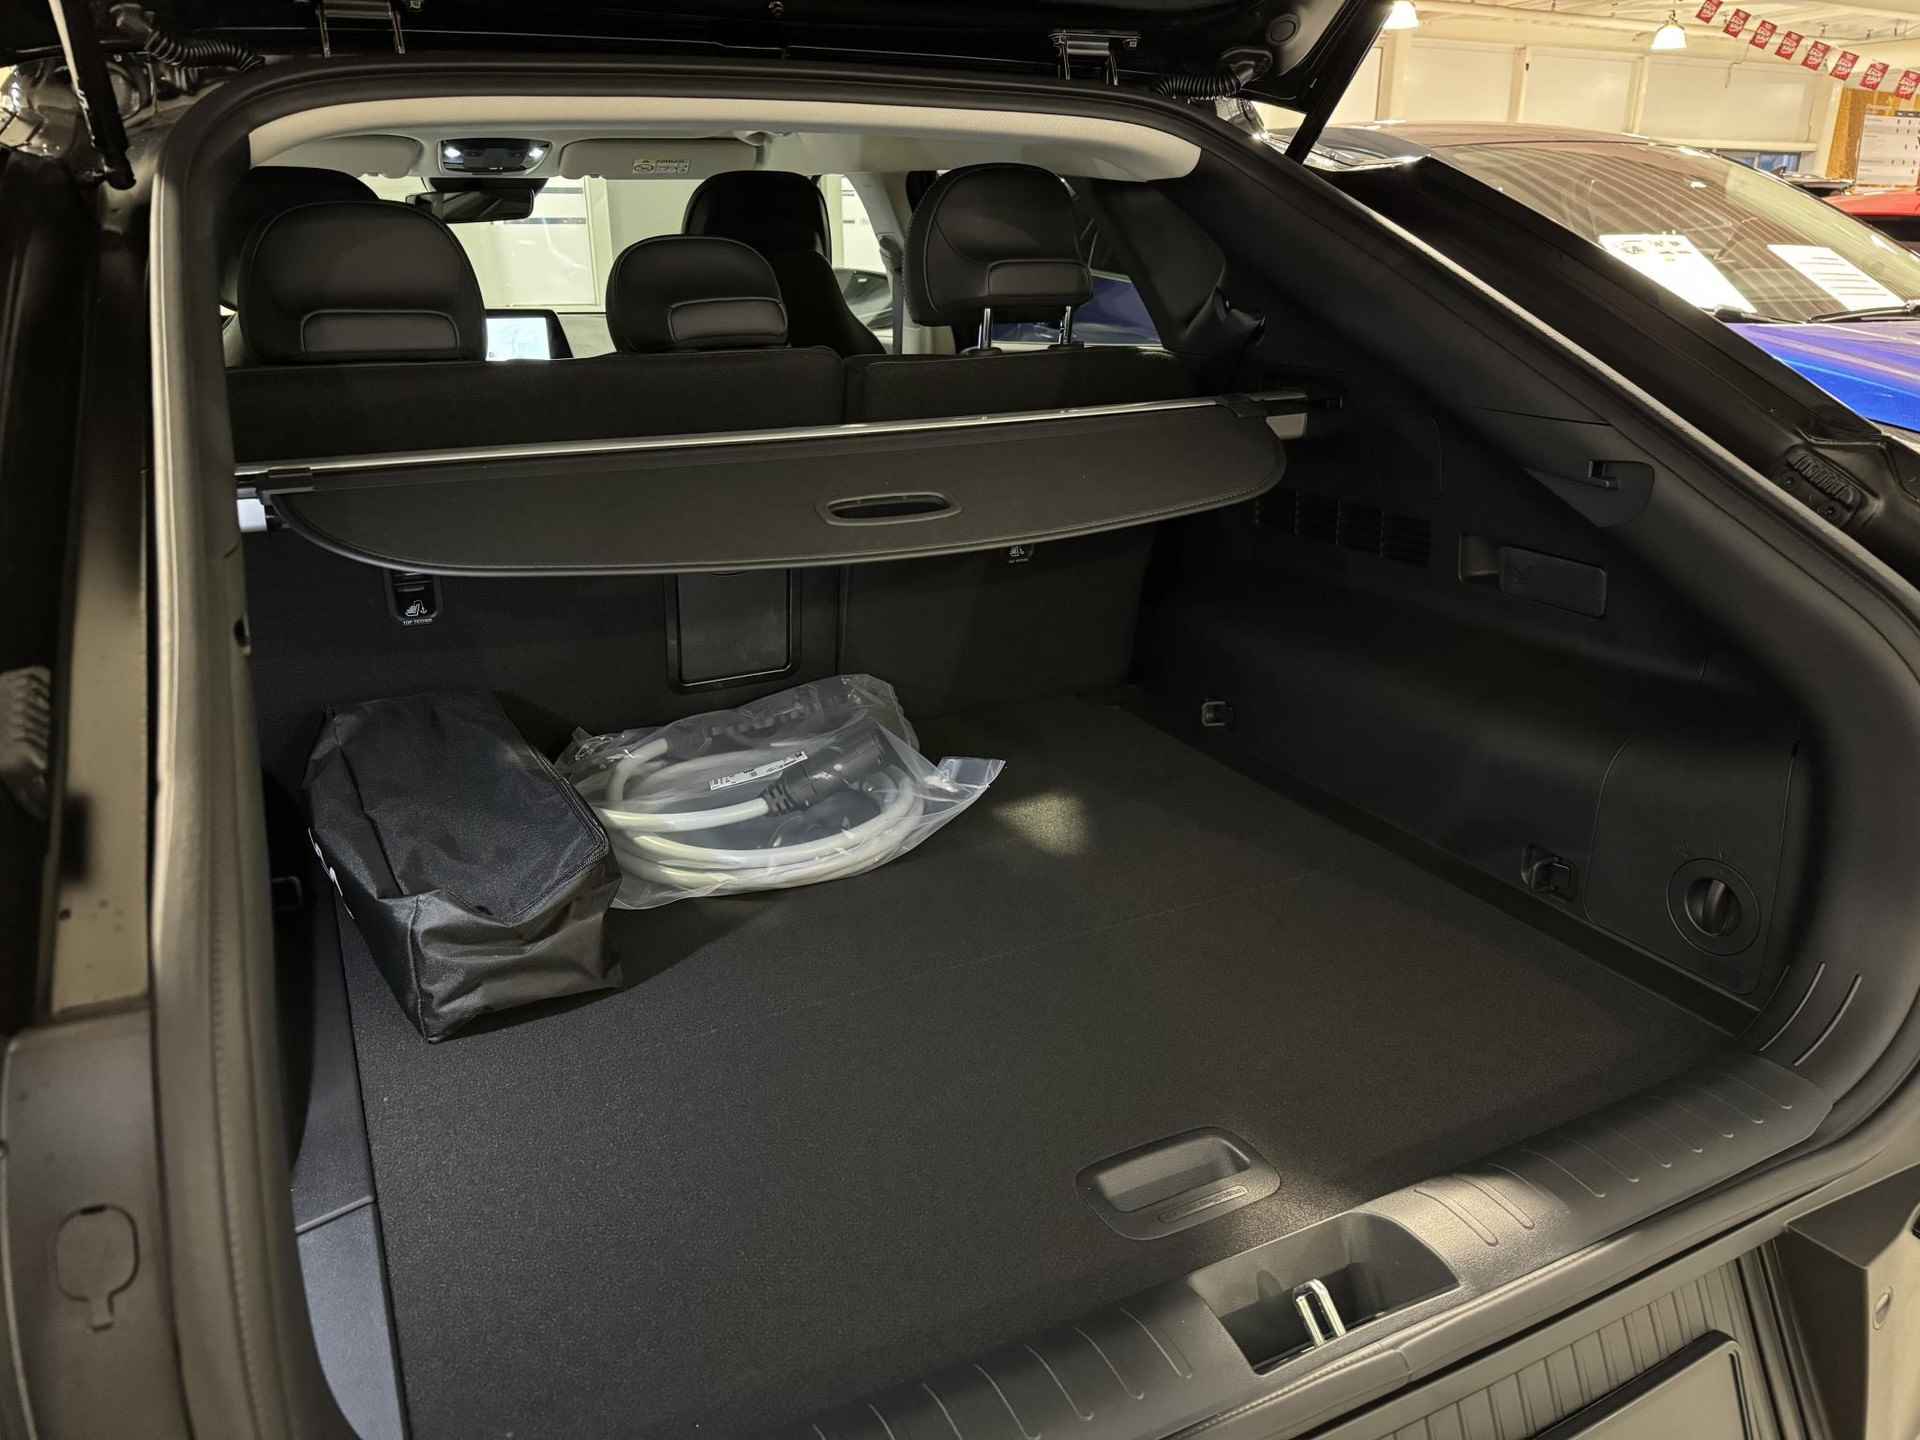 Kia EV6 Light Edition 58 kWh | €2.950,- overheidssubsidie + €2.950,- Kia subsidie! | €5.900,- voordeel! | Beperkte beschikbaarheid! | 180kW laadvermogen | 394 km WLTP-actieradius | Stoel-/stuurverwarming - 33/36